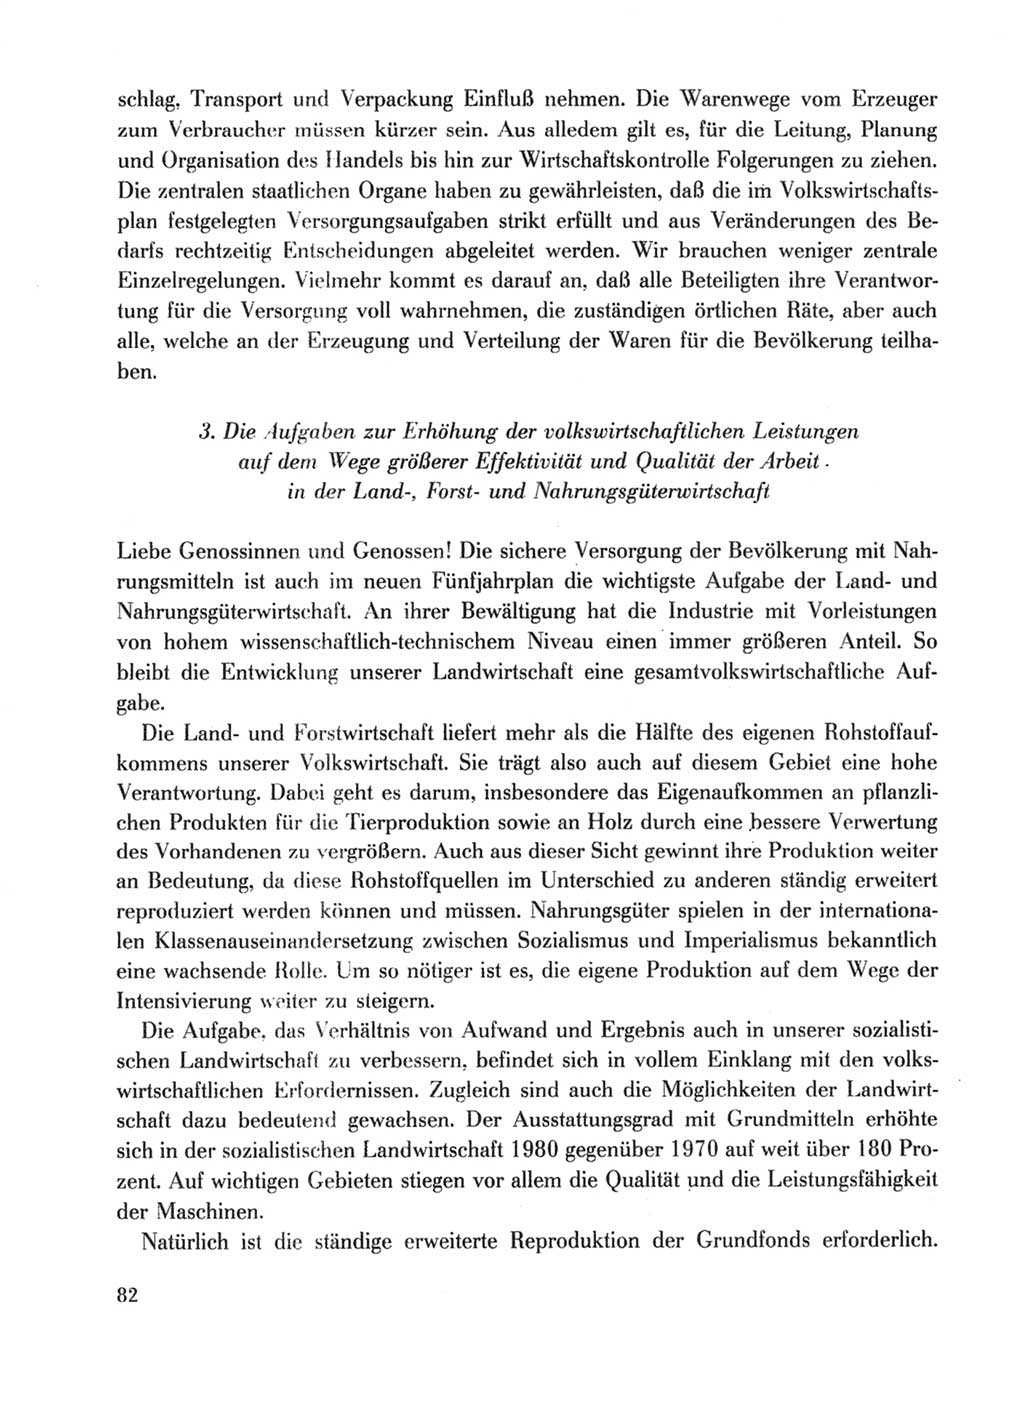 Protokoll der Verhandlungen des Ⅹ. Parteitages der Sozialistischen Einheitspartei Deutschlands (SED) [Deutsche Demokratische Republik (DDR)] 1981, Band 1, Seite 82 (Prot. Verh. Ⅹ. PT SED DDR 1981, Bd. 1, S. 82)